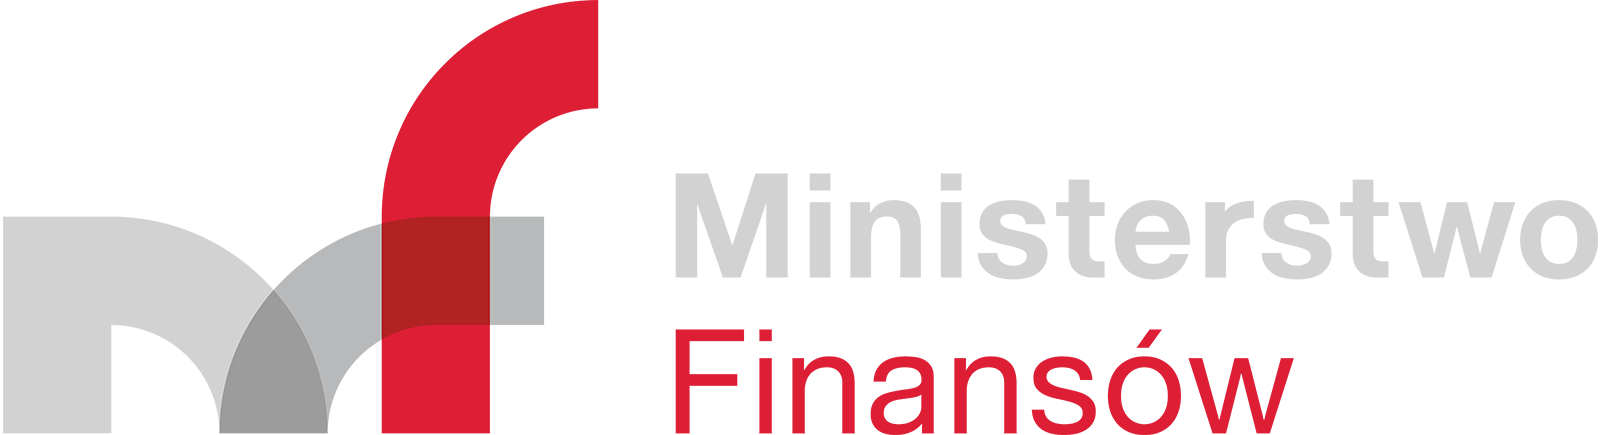 Logo-Ministerstwo-Finansów-svgRGBpoziom-190226-OK